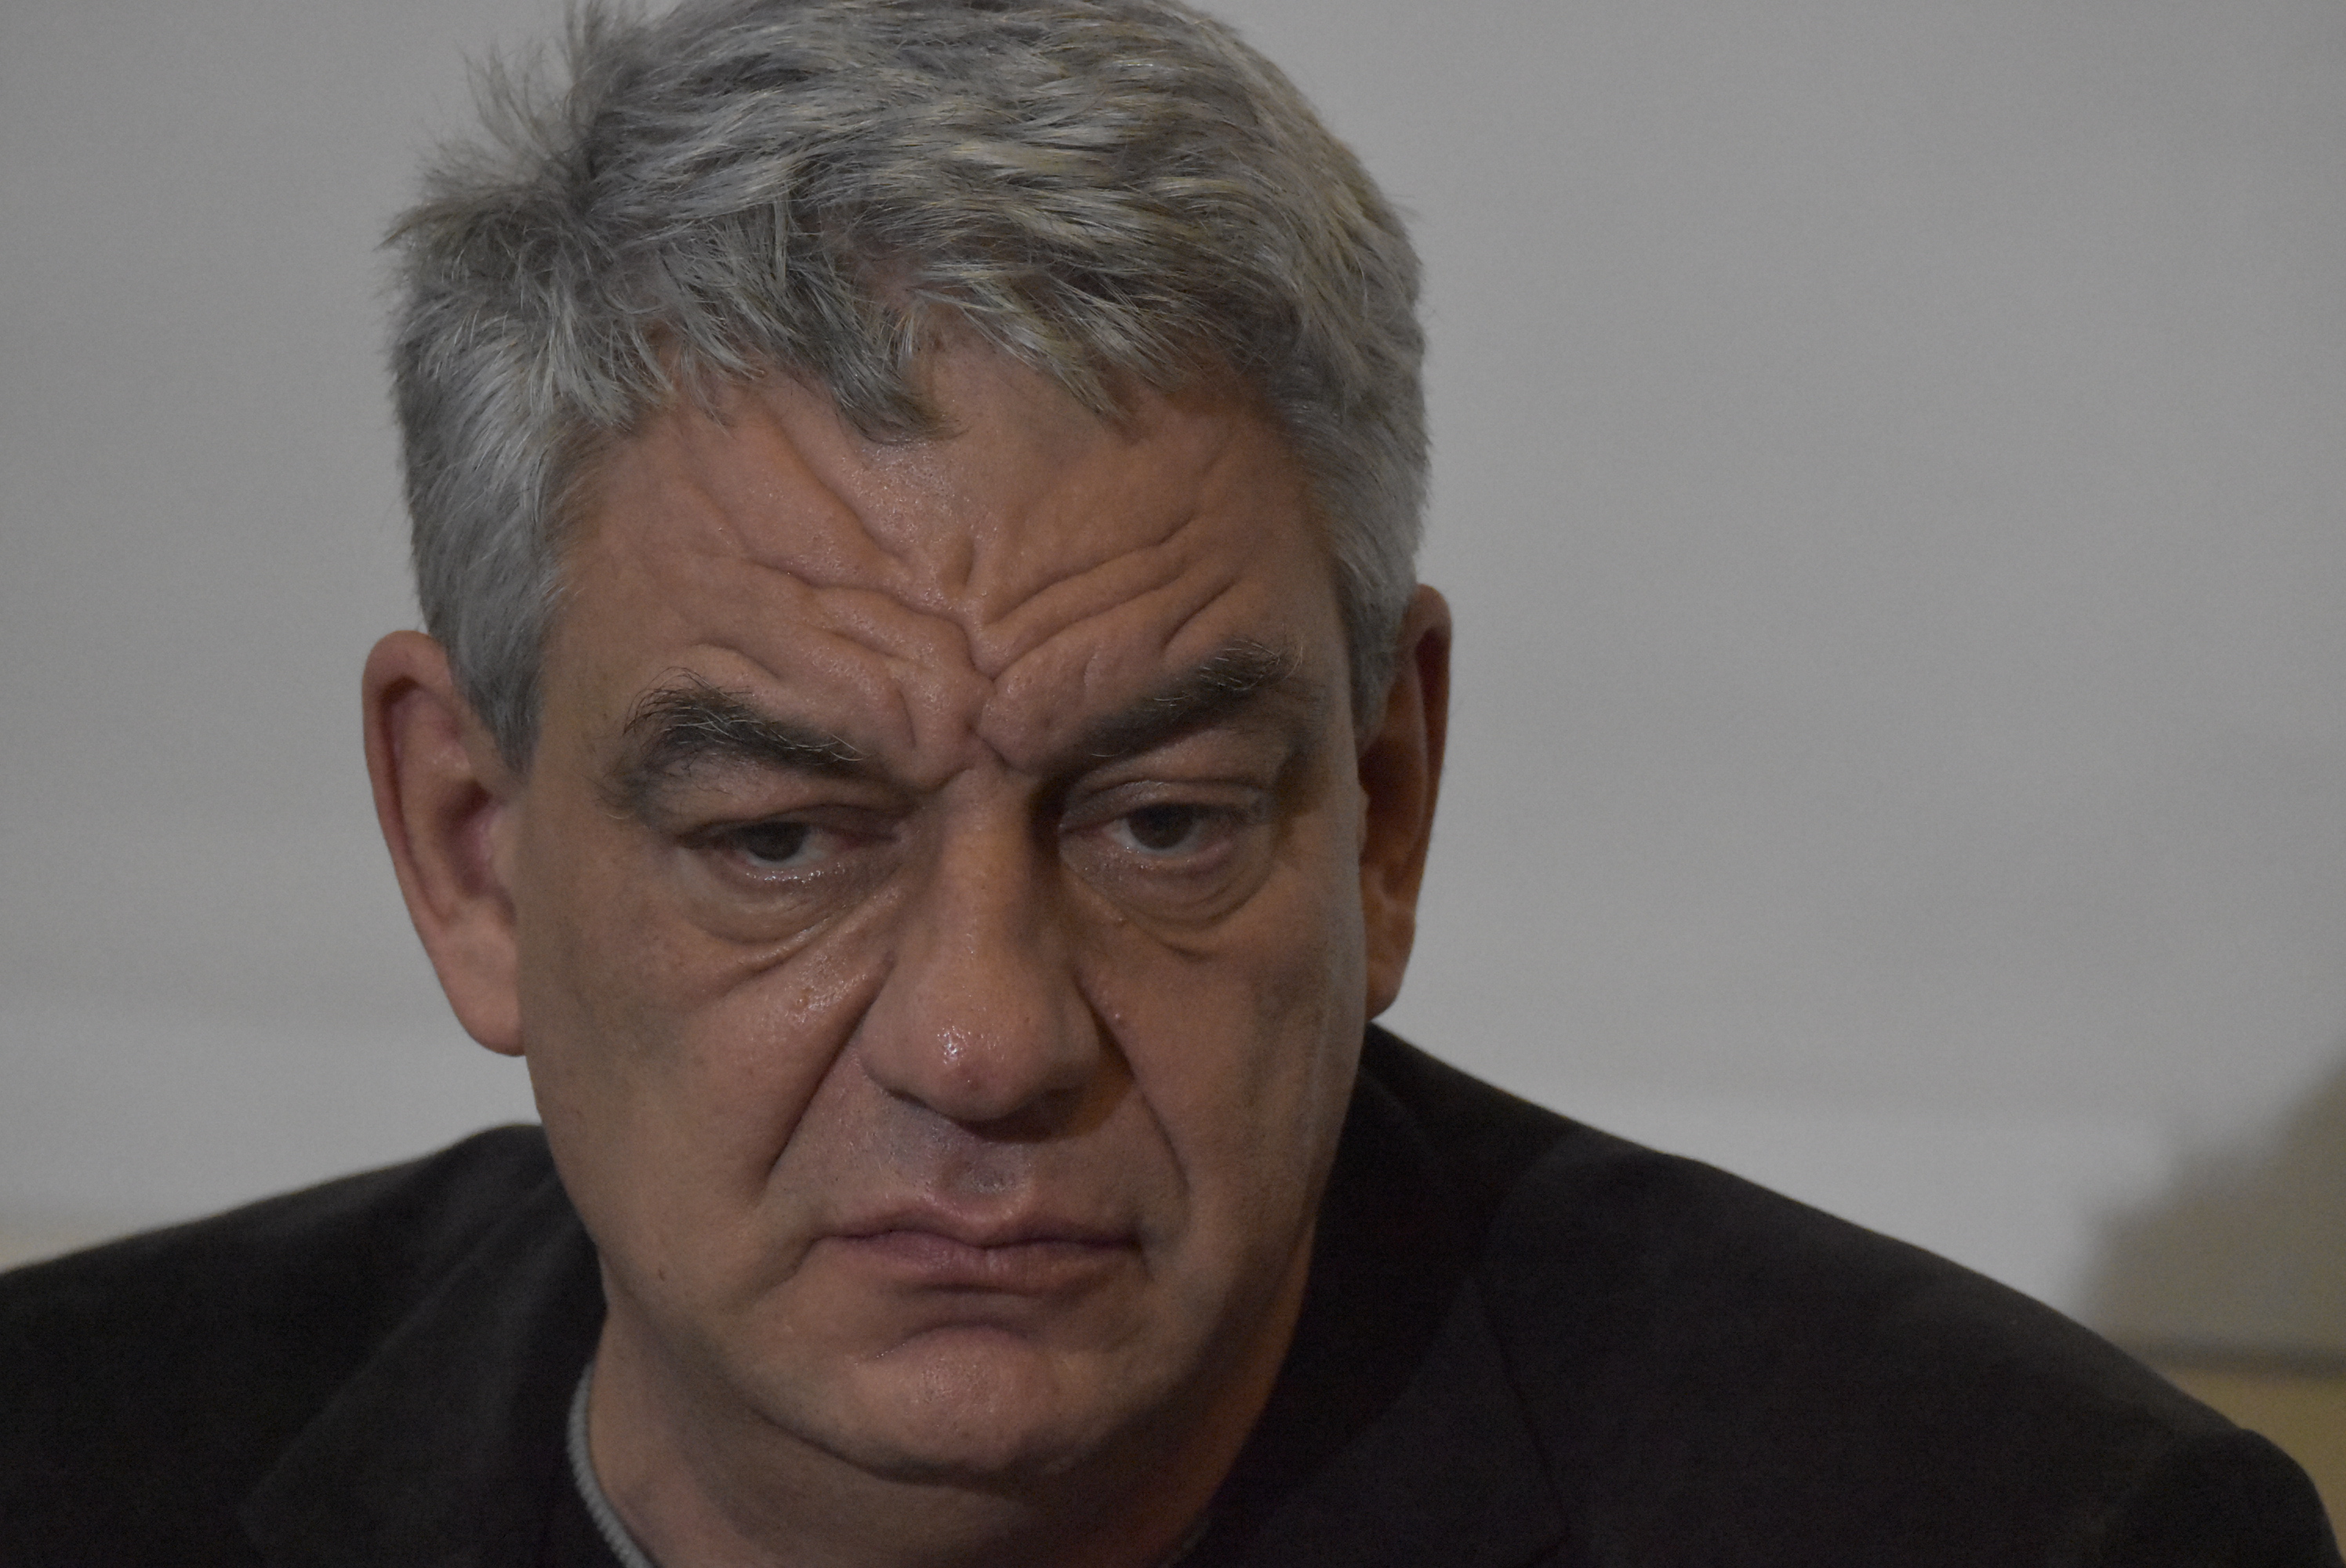 Mihai Tudose nu vrea miting pentru susţinerea Vioricăi Dăncilă: ”Te-ai căsătorit o dată, stai acolo”